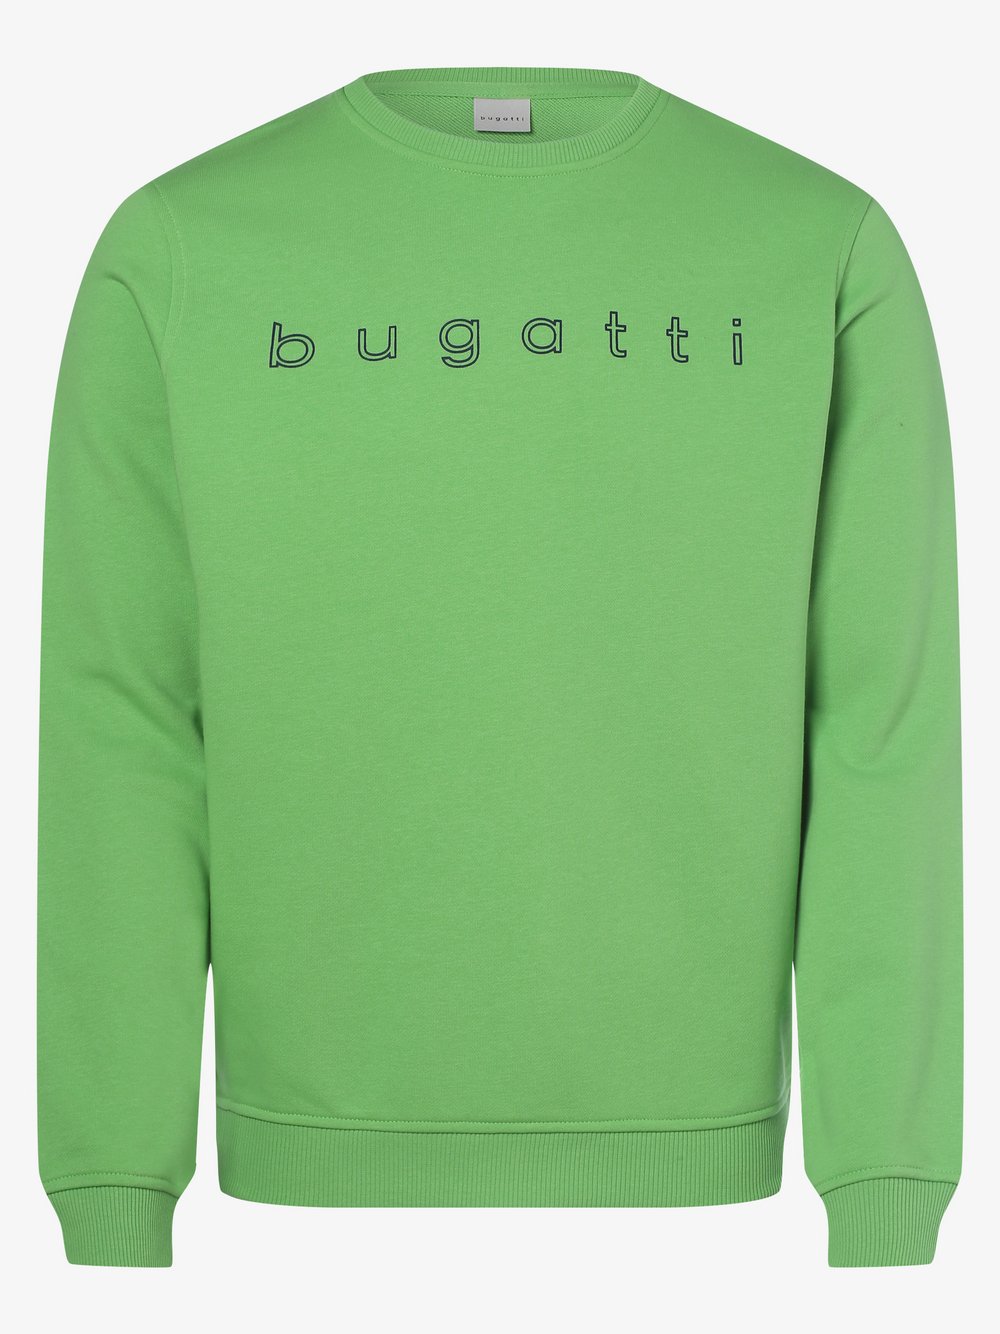 Bugatti - Męska bluza nierozpinana, zielony